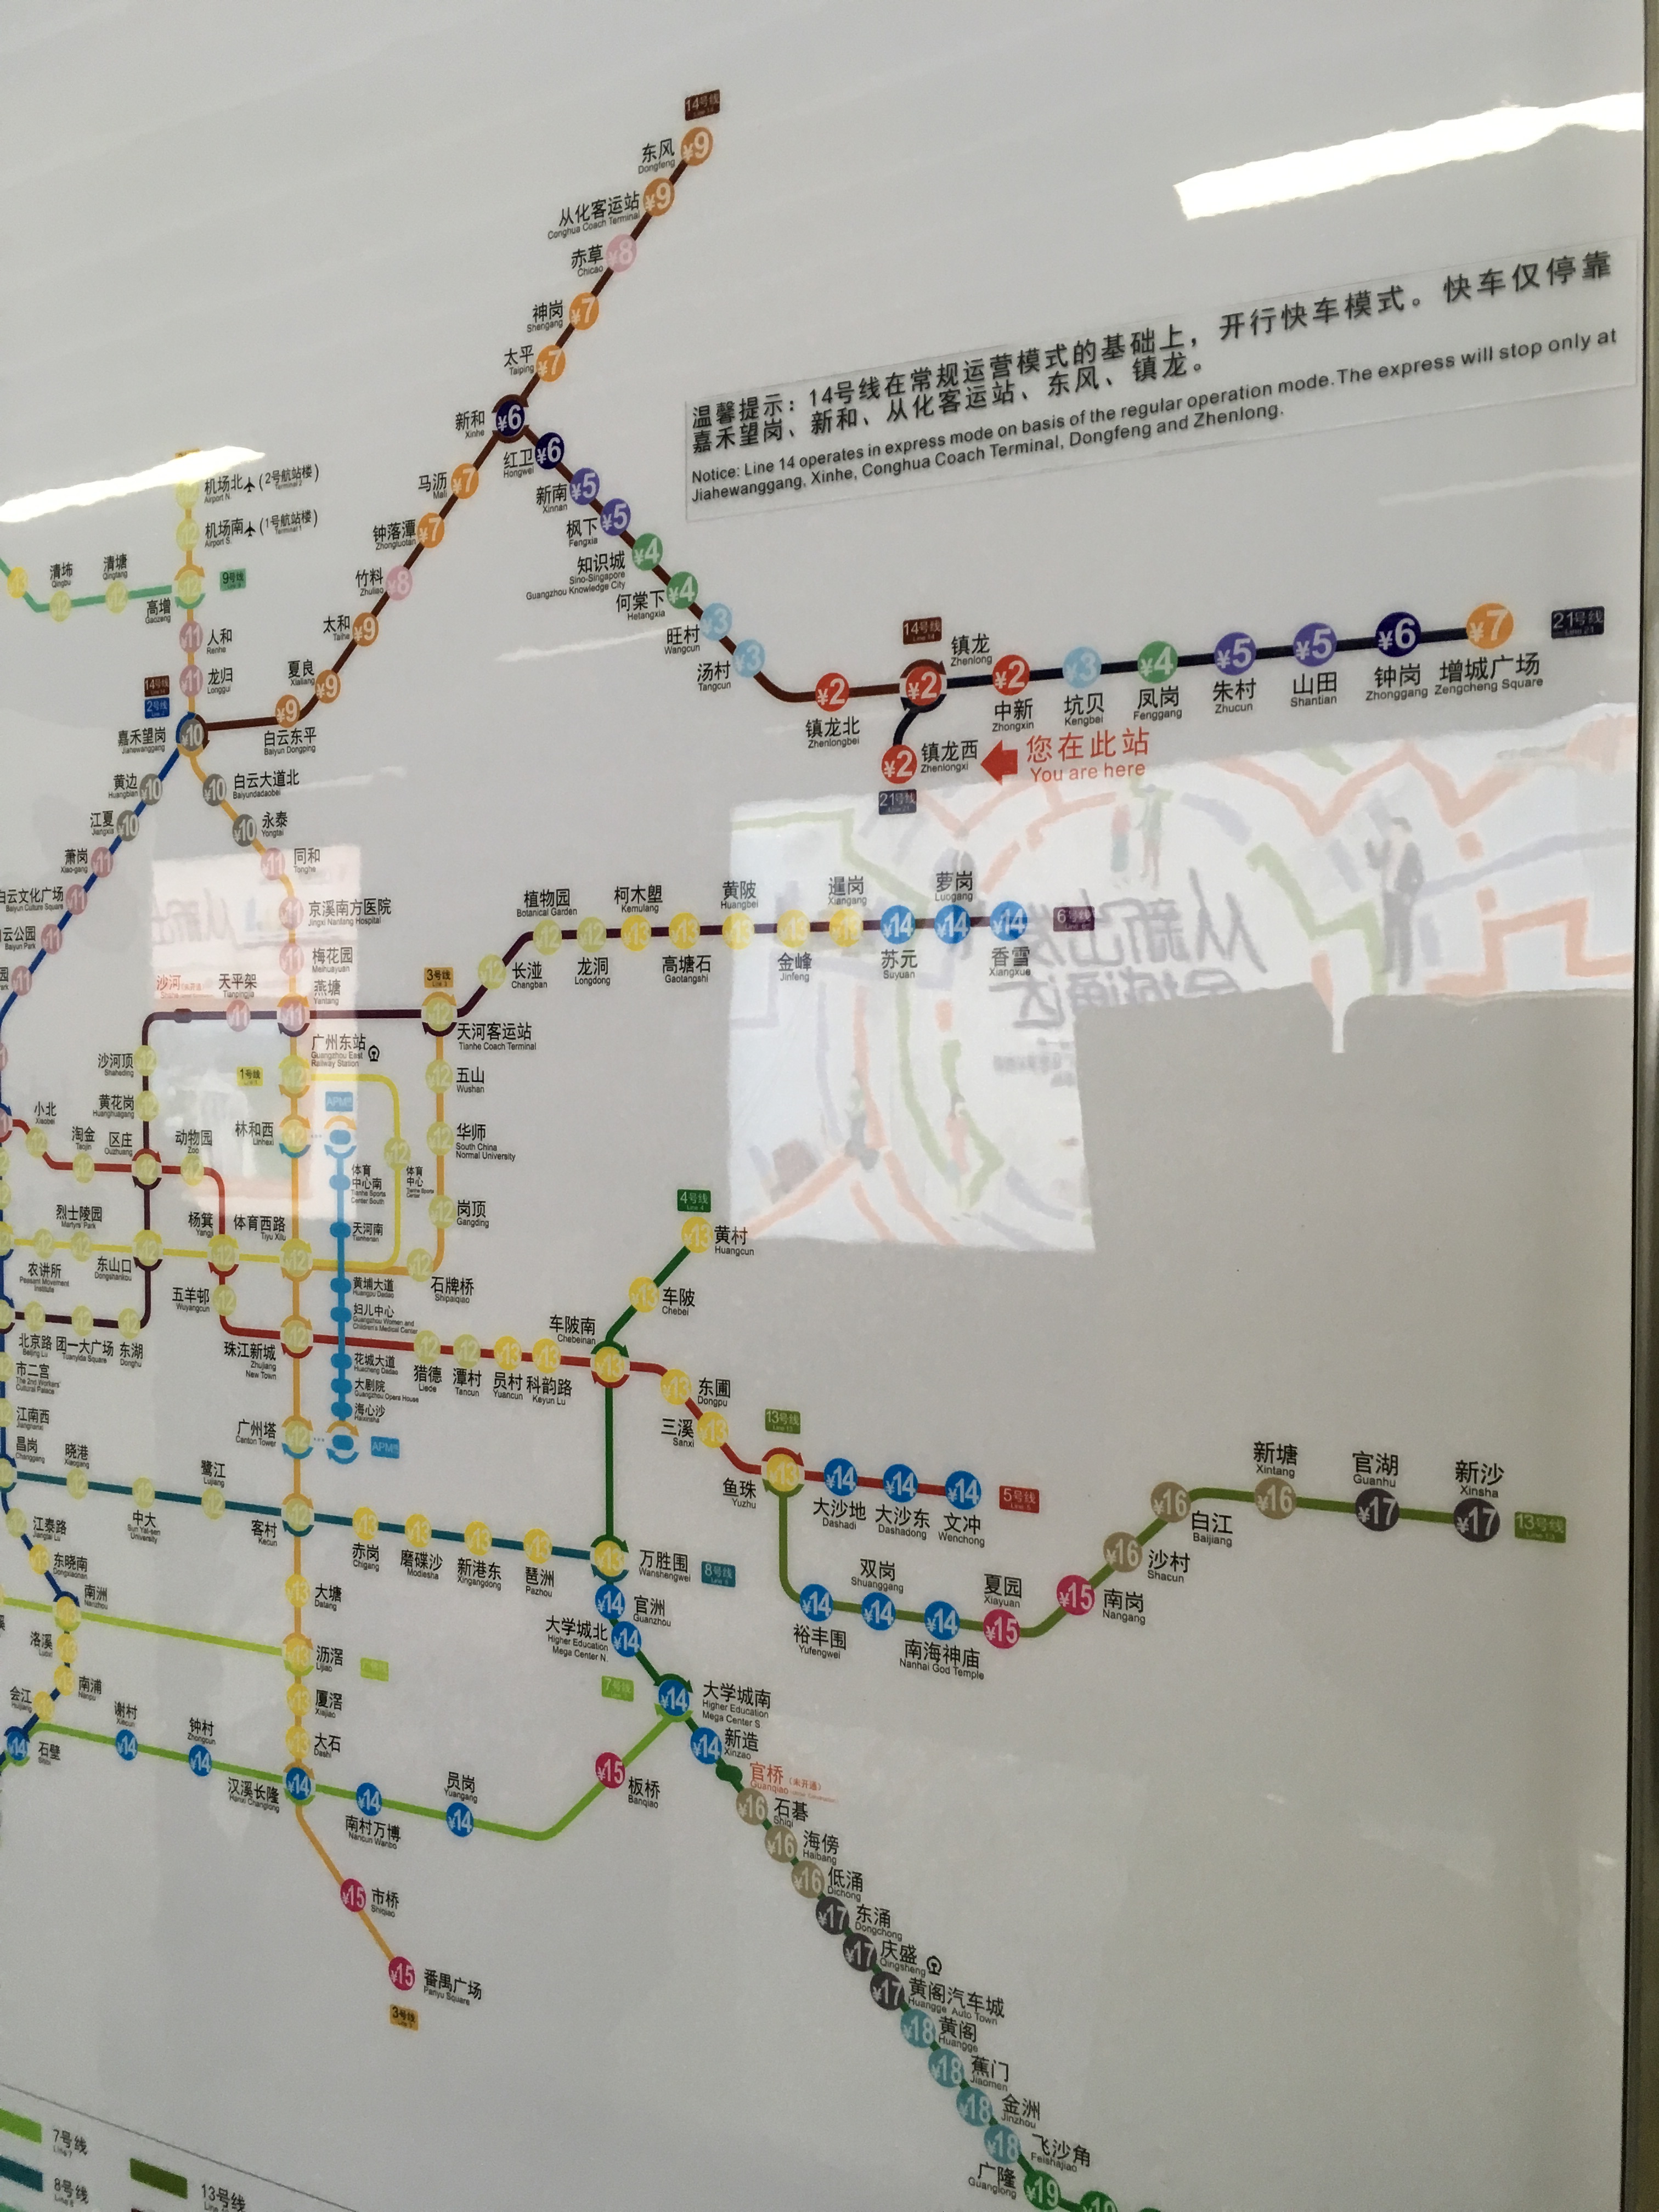 从地铁苏元站乘坐6号线到香雪站才2元,乘坐365a路公交车才3元,如果在